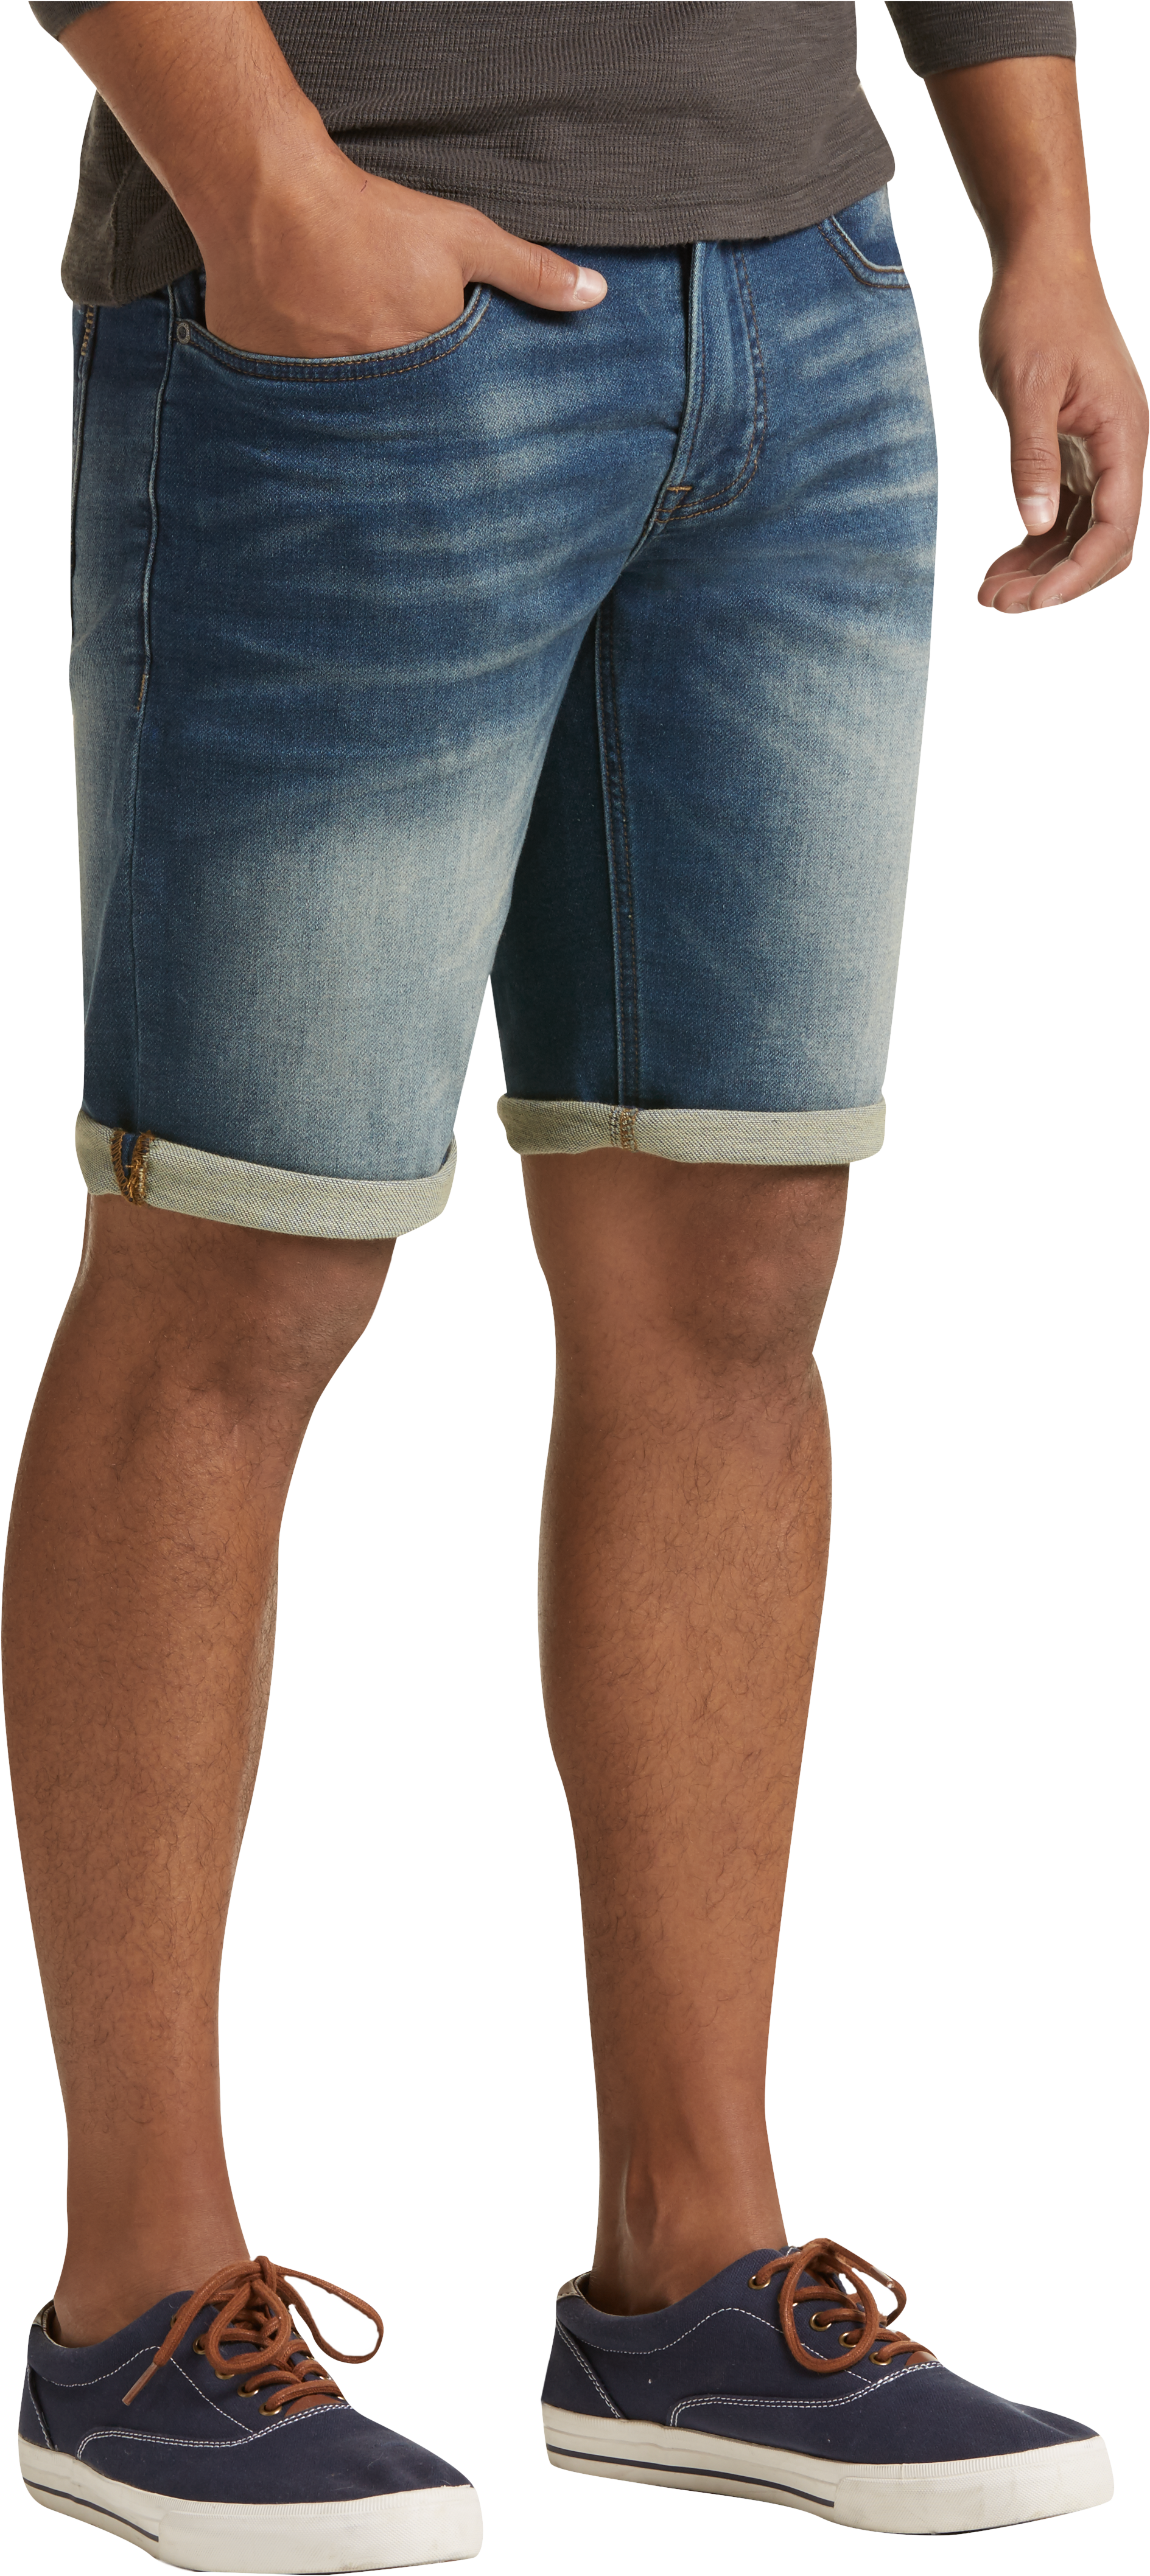 dark blue jean shorts mens